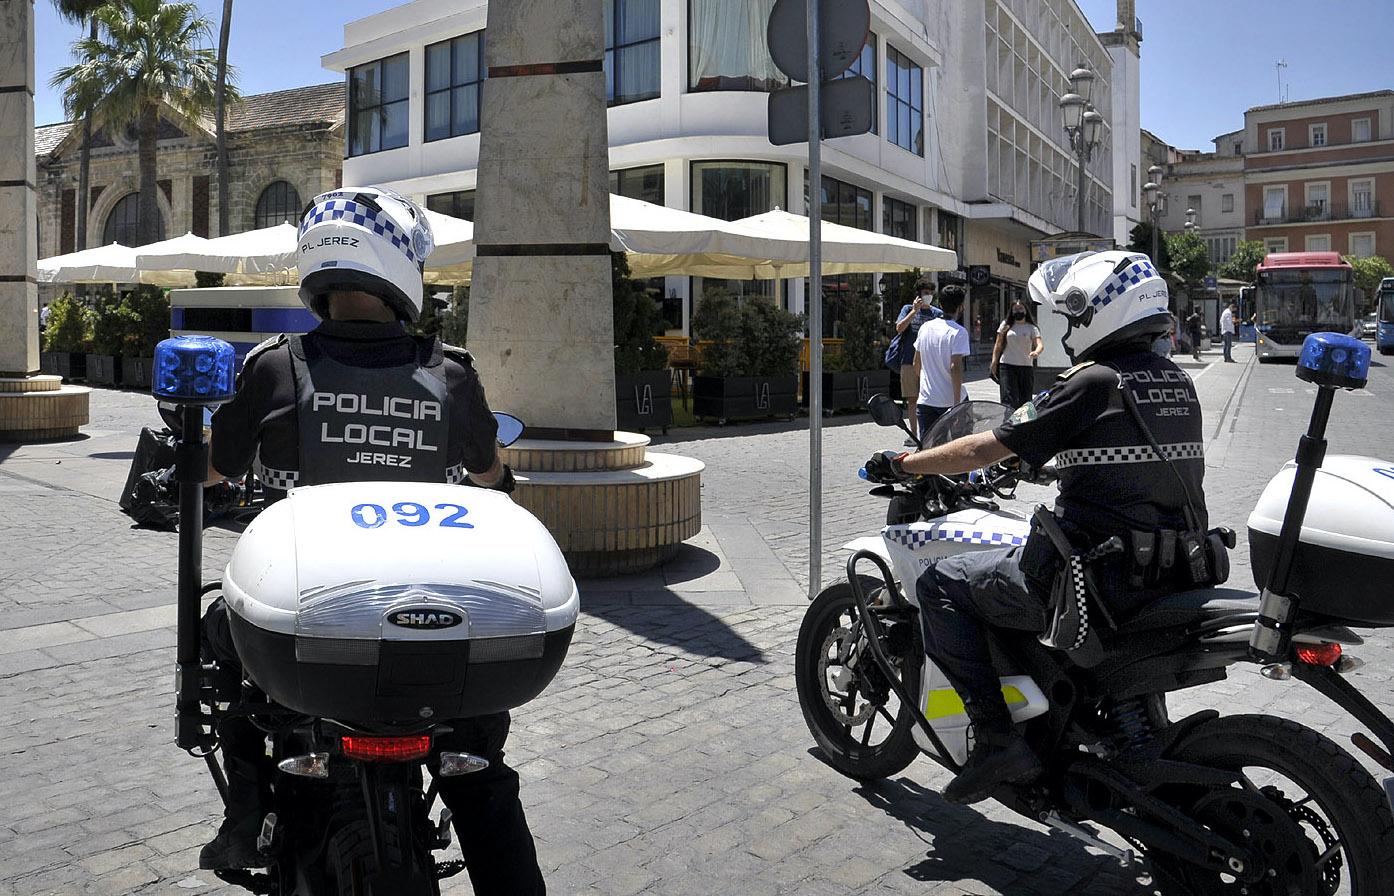 La Policía Local de Jerez detiene a ocho personas por delitos contra la seguridad vial